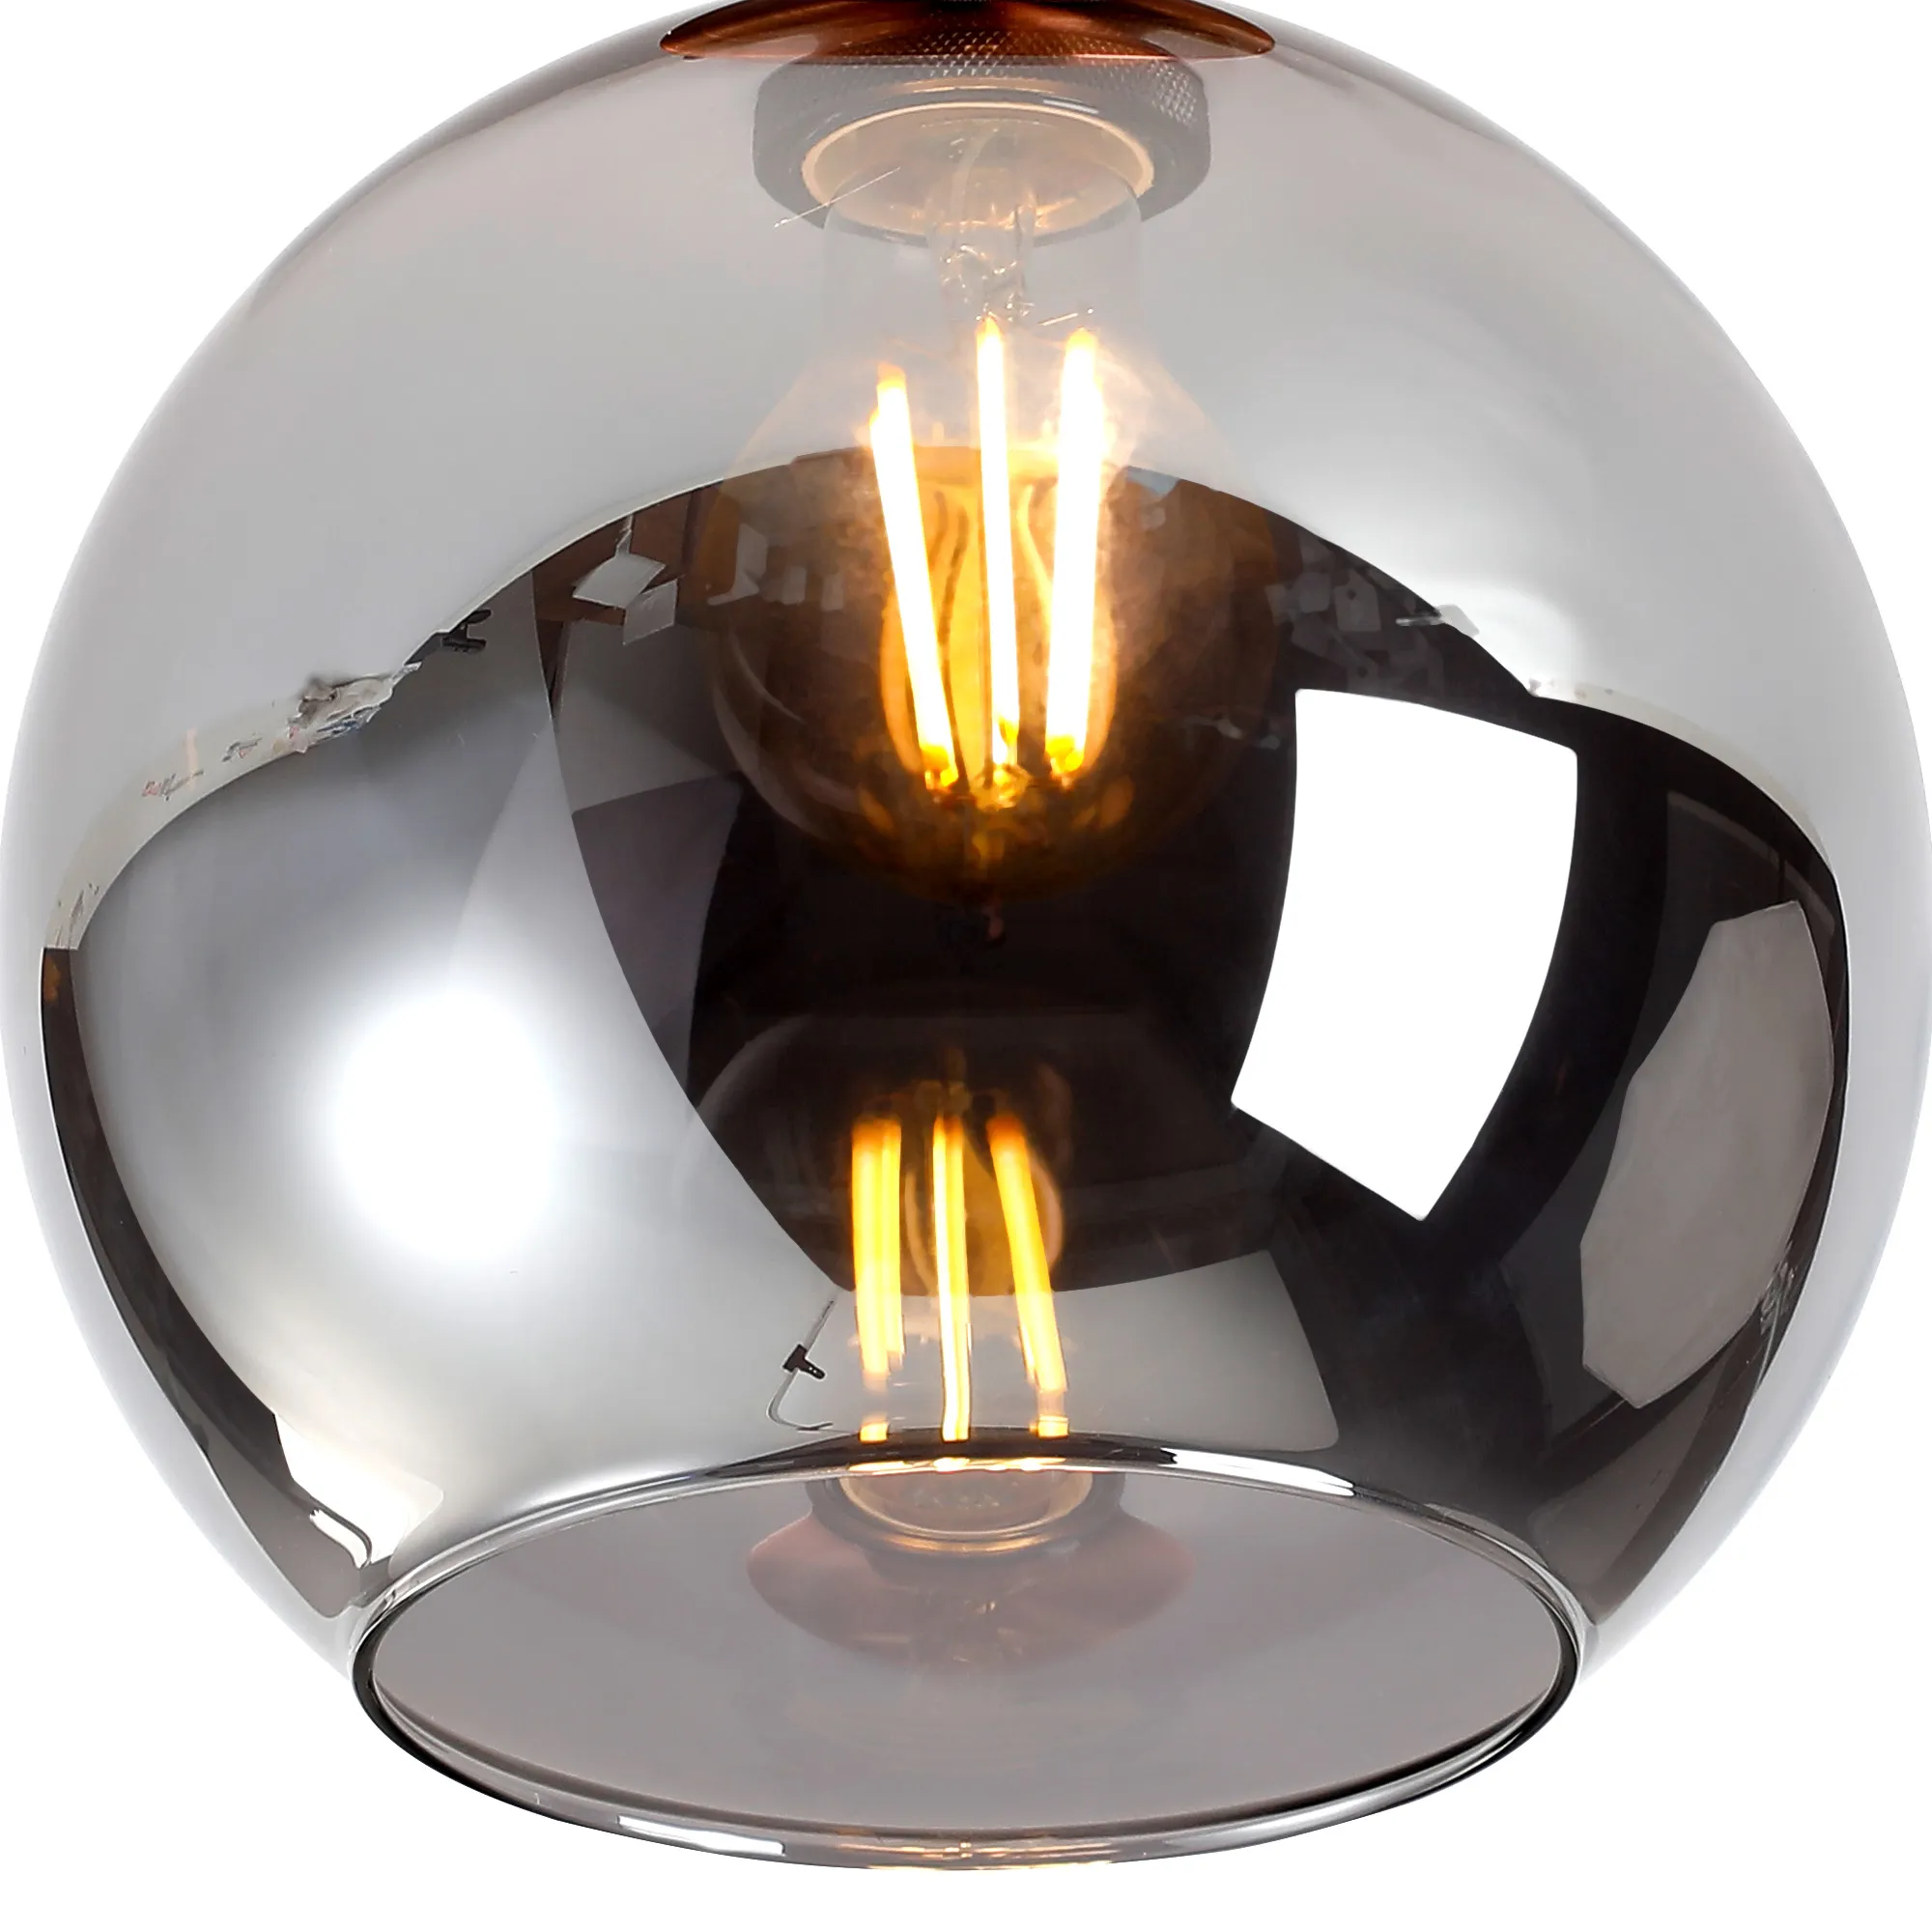 Cawdor Flush Fitting; 1 Light E27; Antique Copper/Smoke Globe Glass DK1156  Deco Cawdor